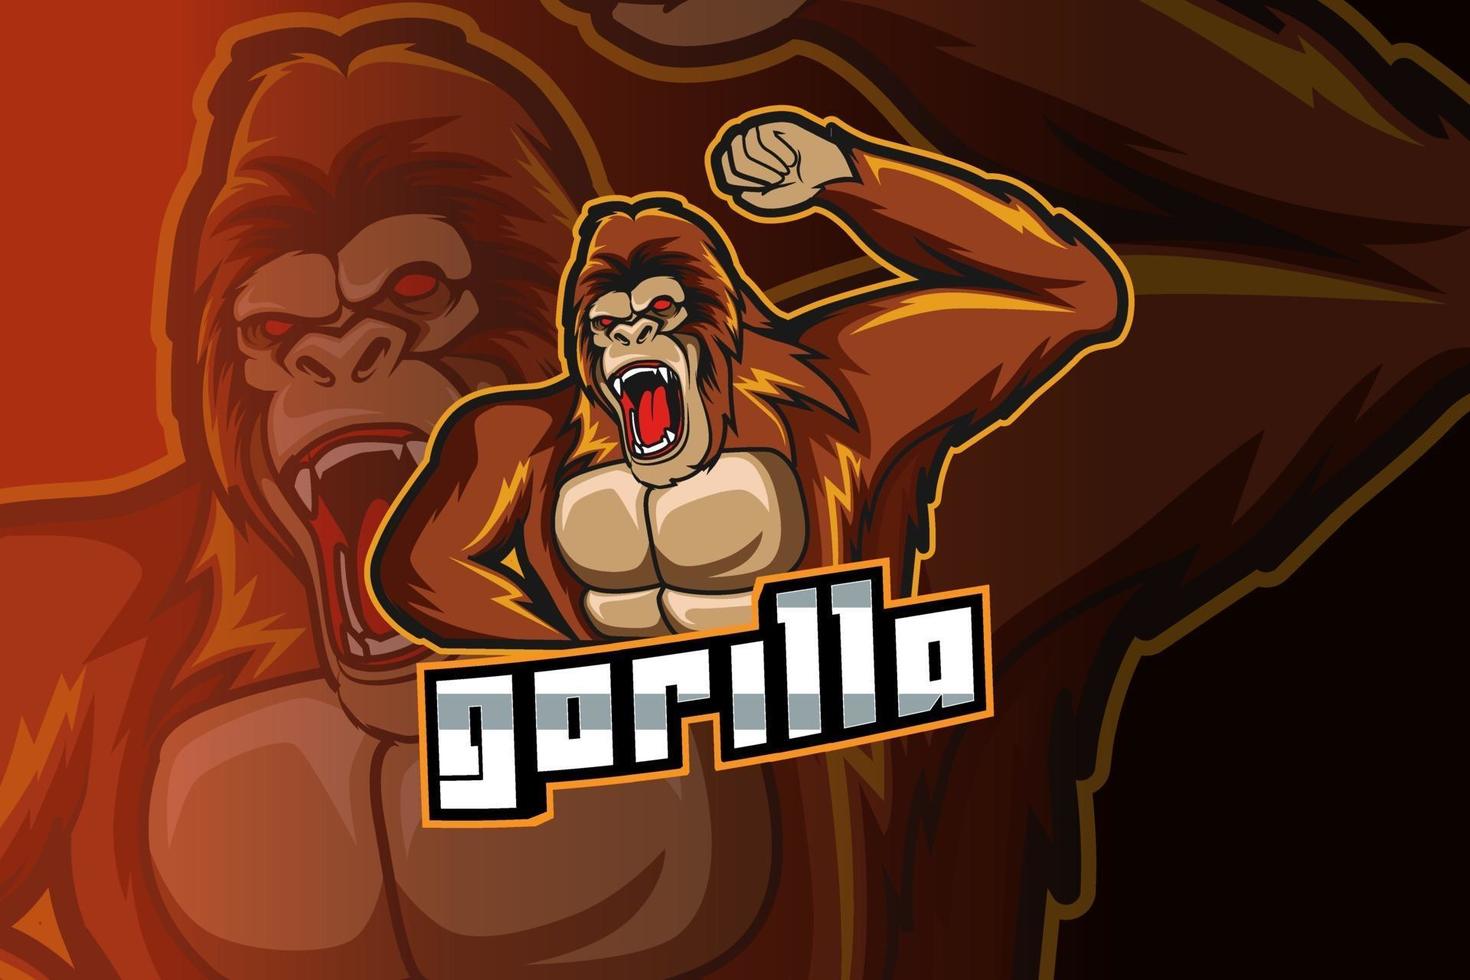 gorilla e sport and sport mascot logo vector